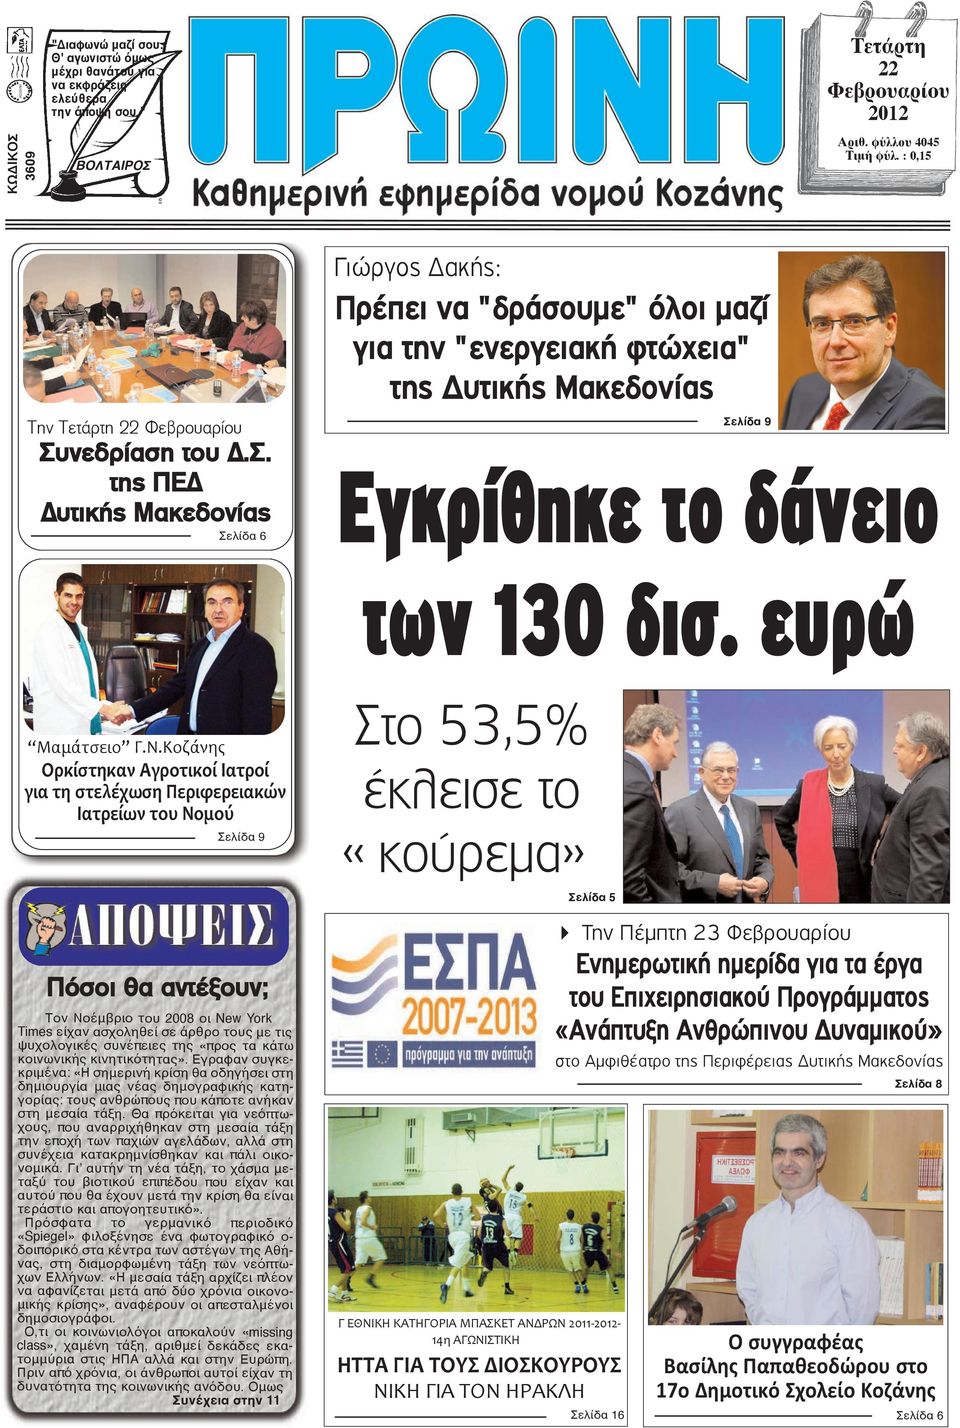 νεδρίαση του Δ.Σ. της ΠΕΔ Δυτικής Μακεδονίας Σελίδα 6 Γιώργος Δακής: Πρέπει να "δράσουμε" όλοι μαζί για την "ενεργειακή φτώχεια" της Δυτικής Μακεδονίας Σελίδα 9 Eγκρίθηκε το δάνειο των 130 δισ.